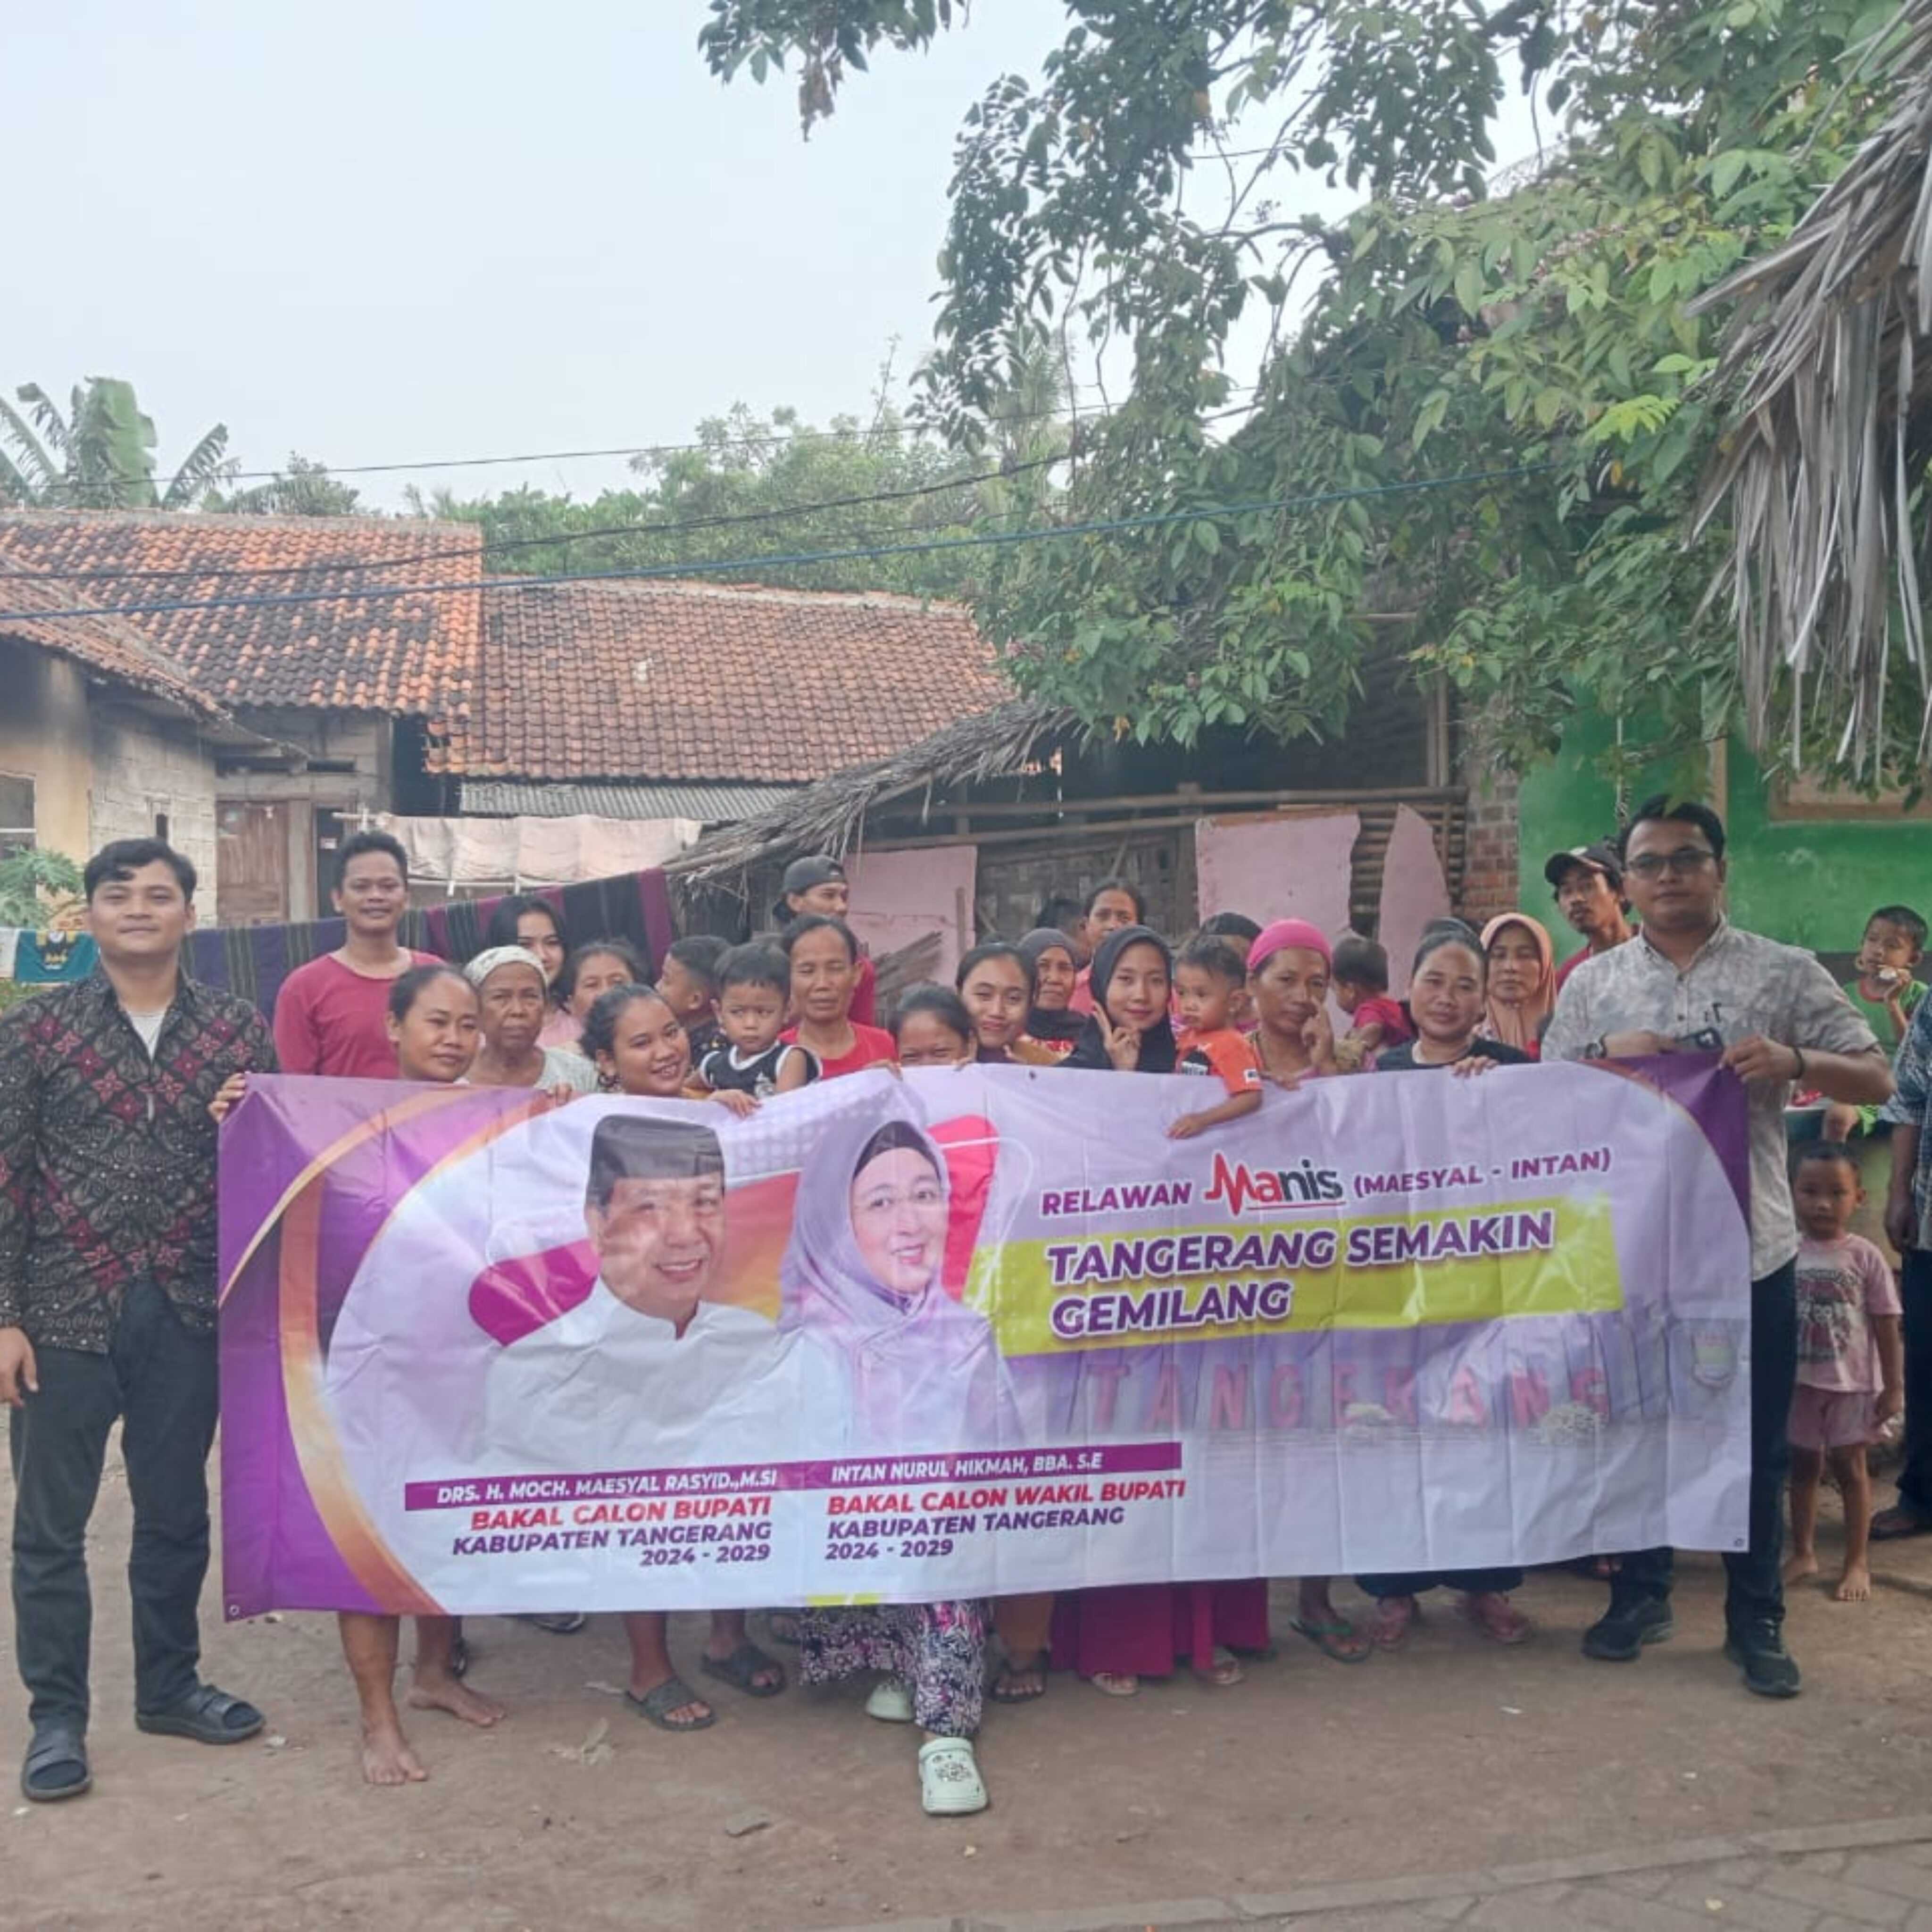 Relawan Deklarasikan Maesyal – Intan di 29 Kecamatan Untuk Tangerang Semakin Gemilang